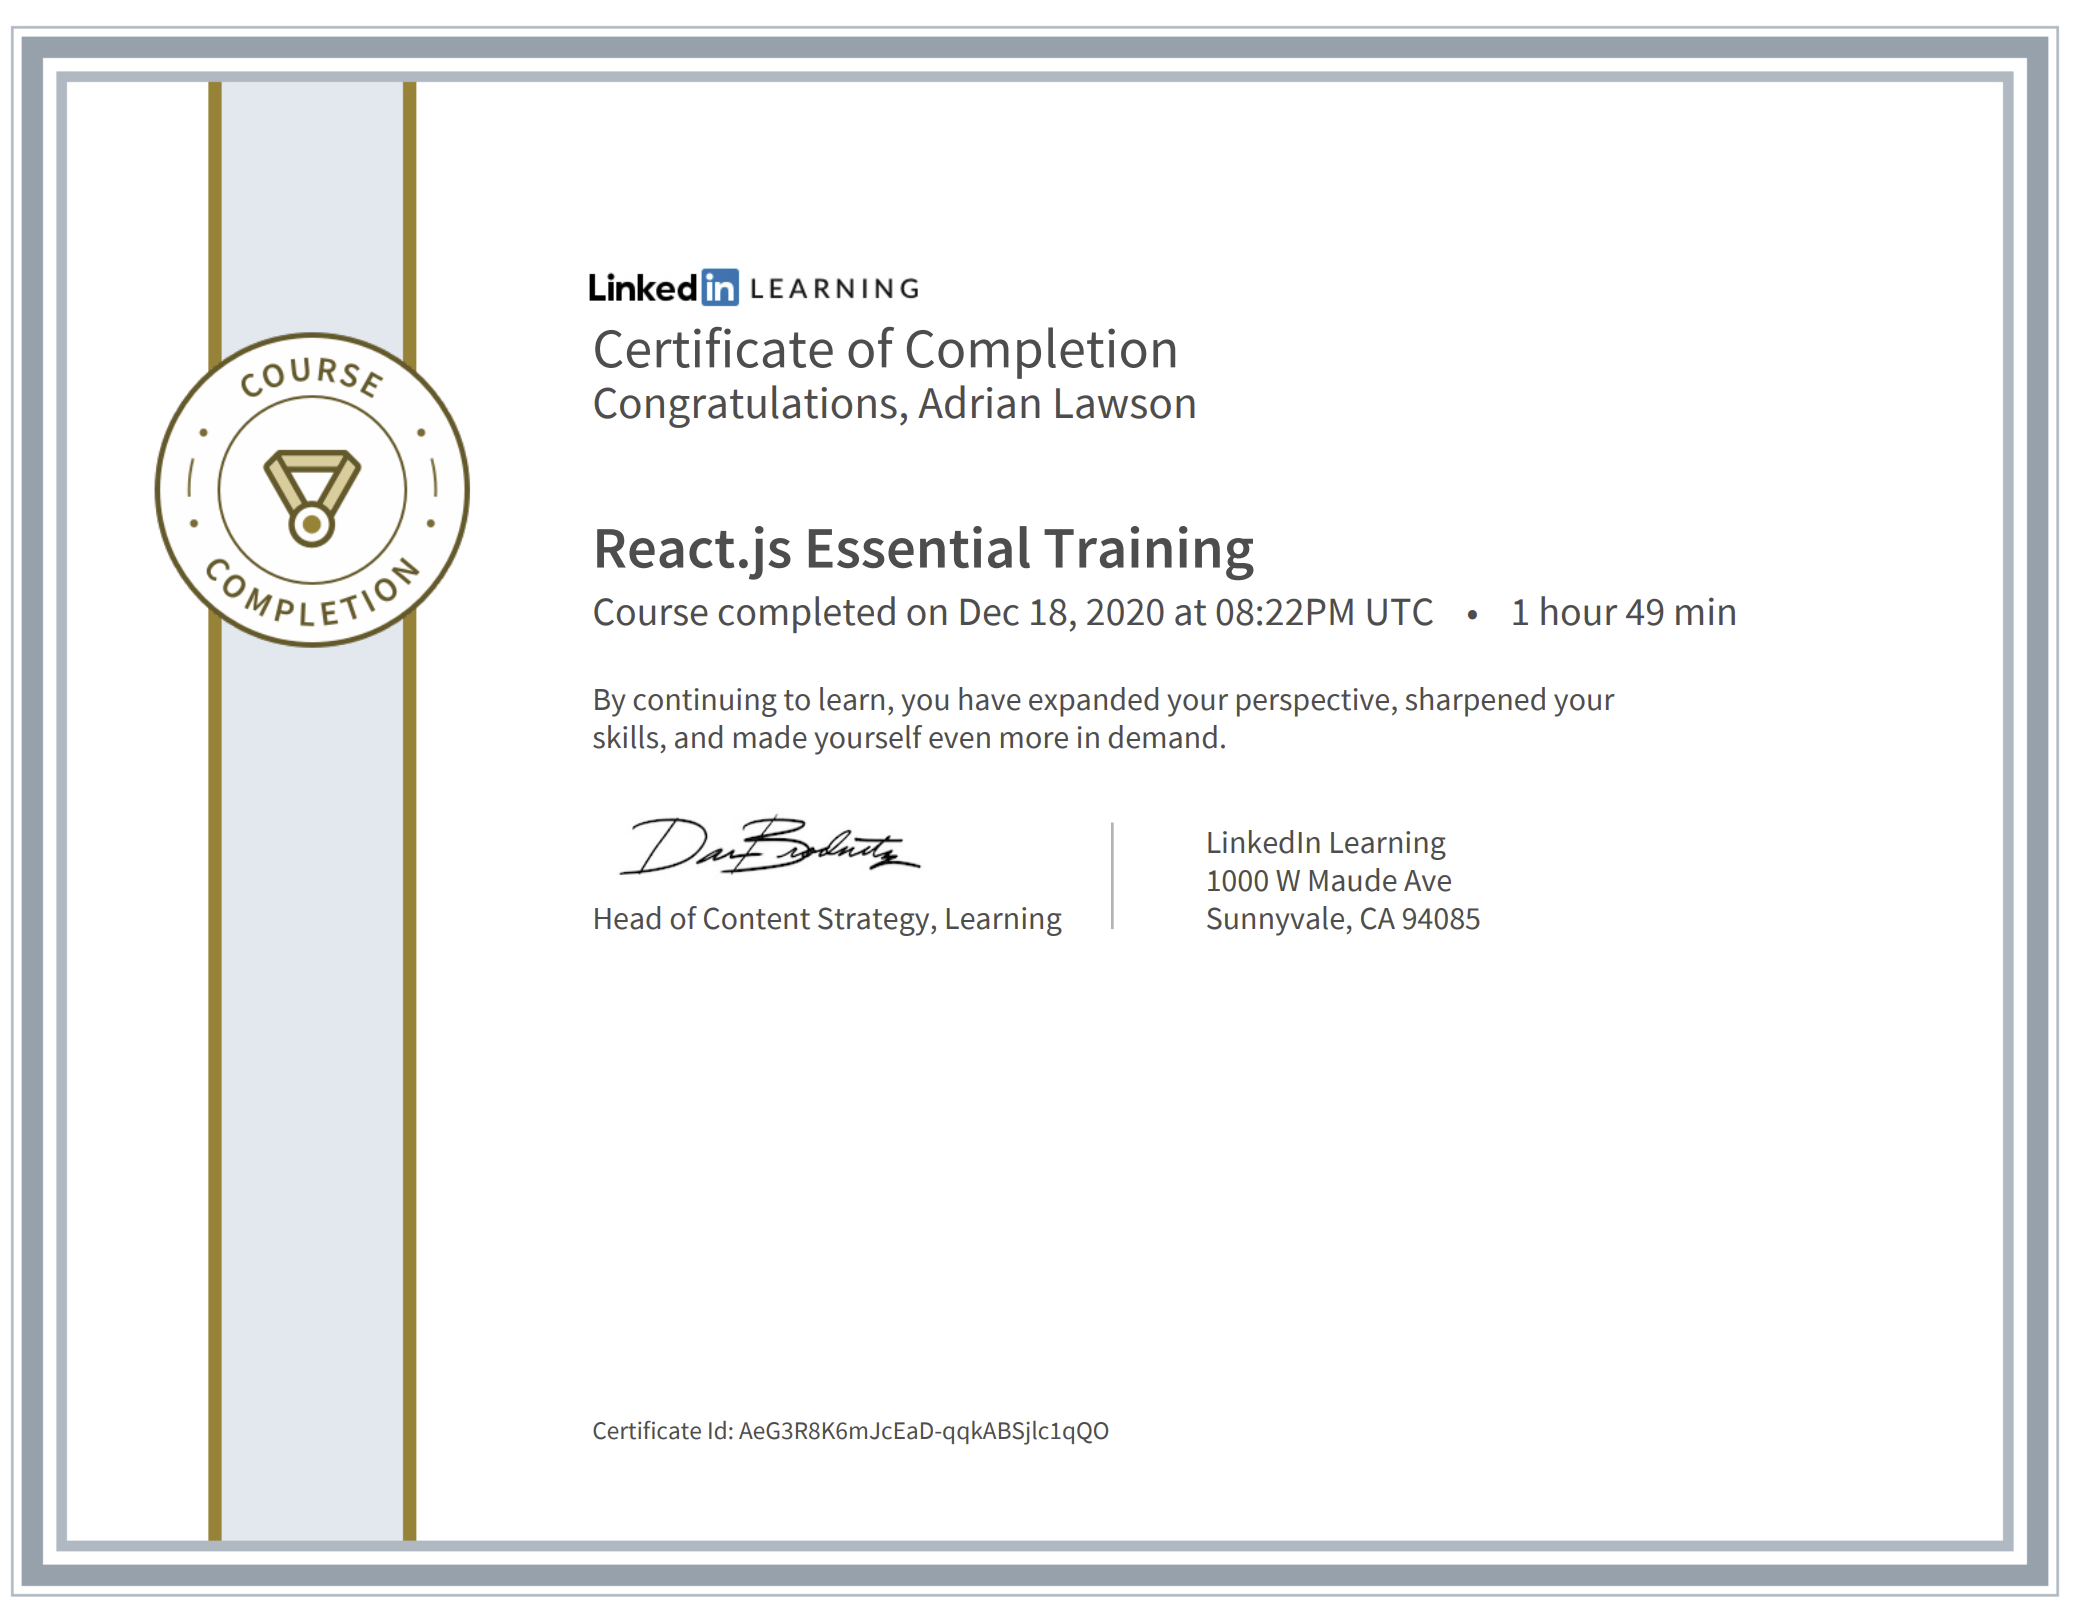 Linkedin Learning React.js Certificate